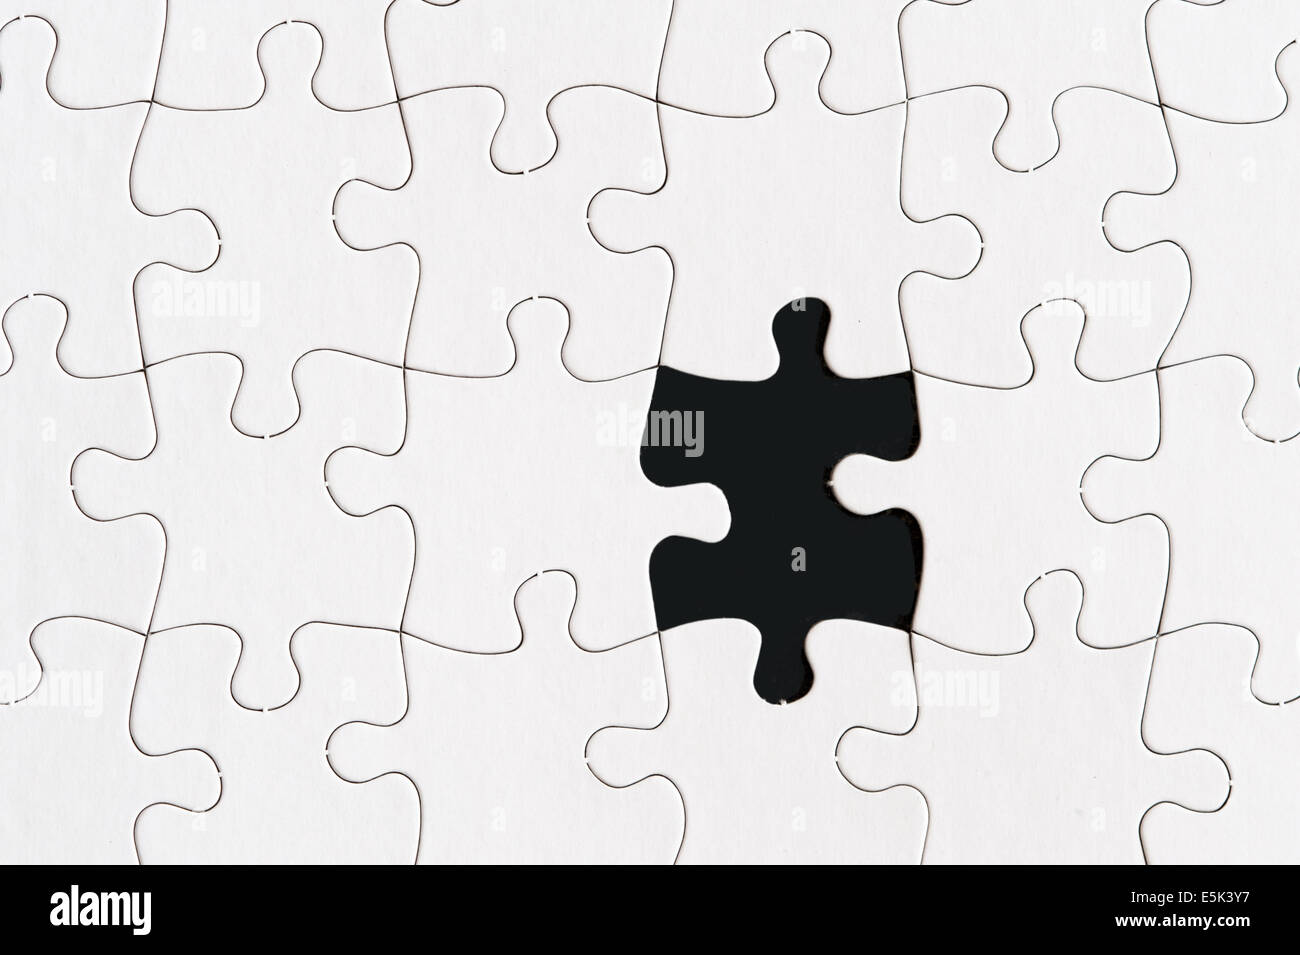 Jigsaw Puzzle en blanco con una pieza faltante Foto de stock